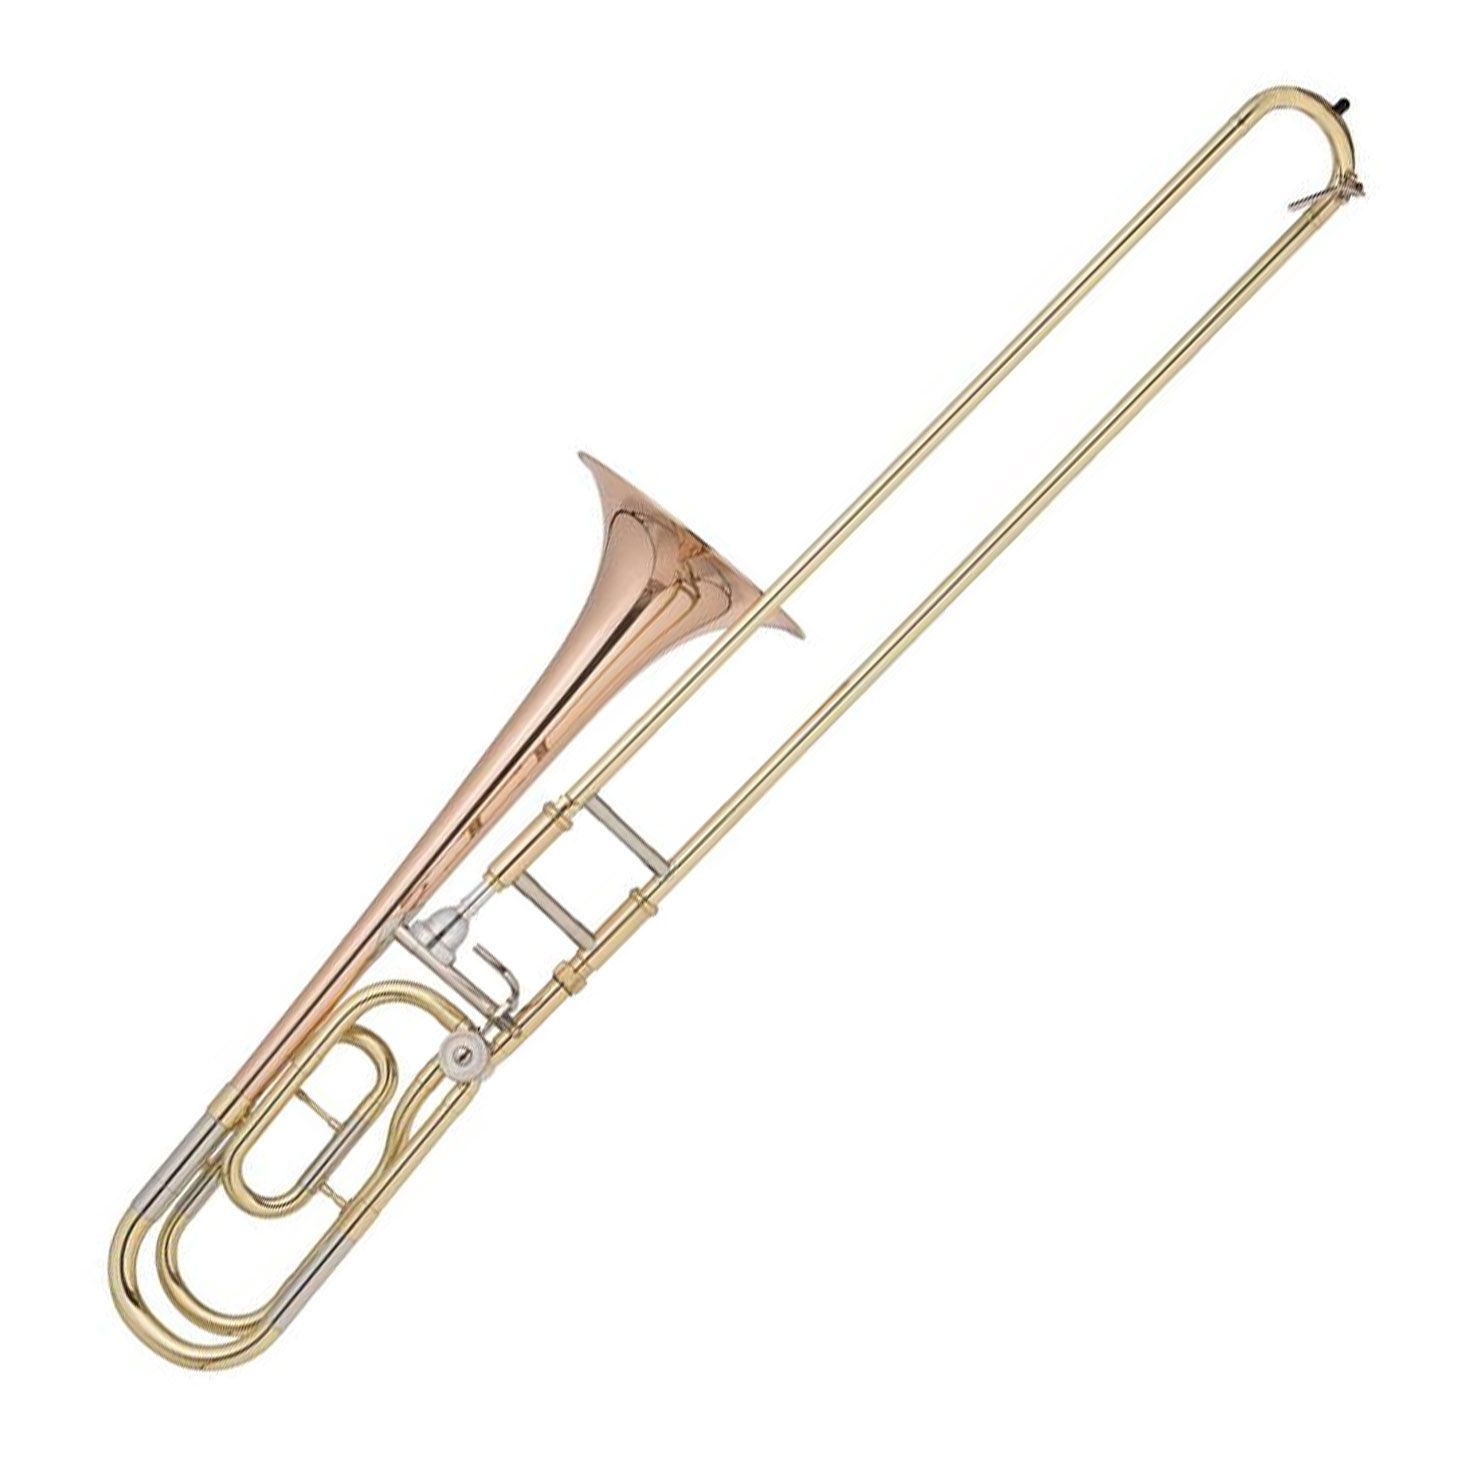 JP133R Bb/F Trombone - medium large or large bore